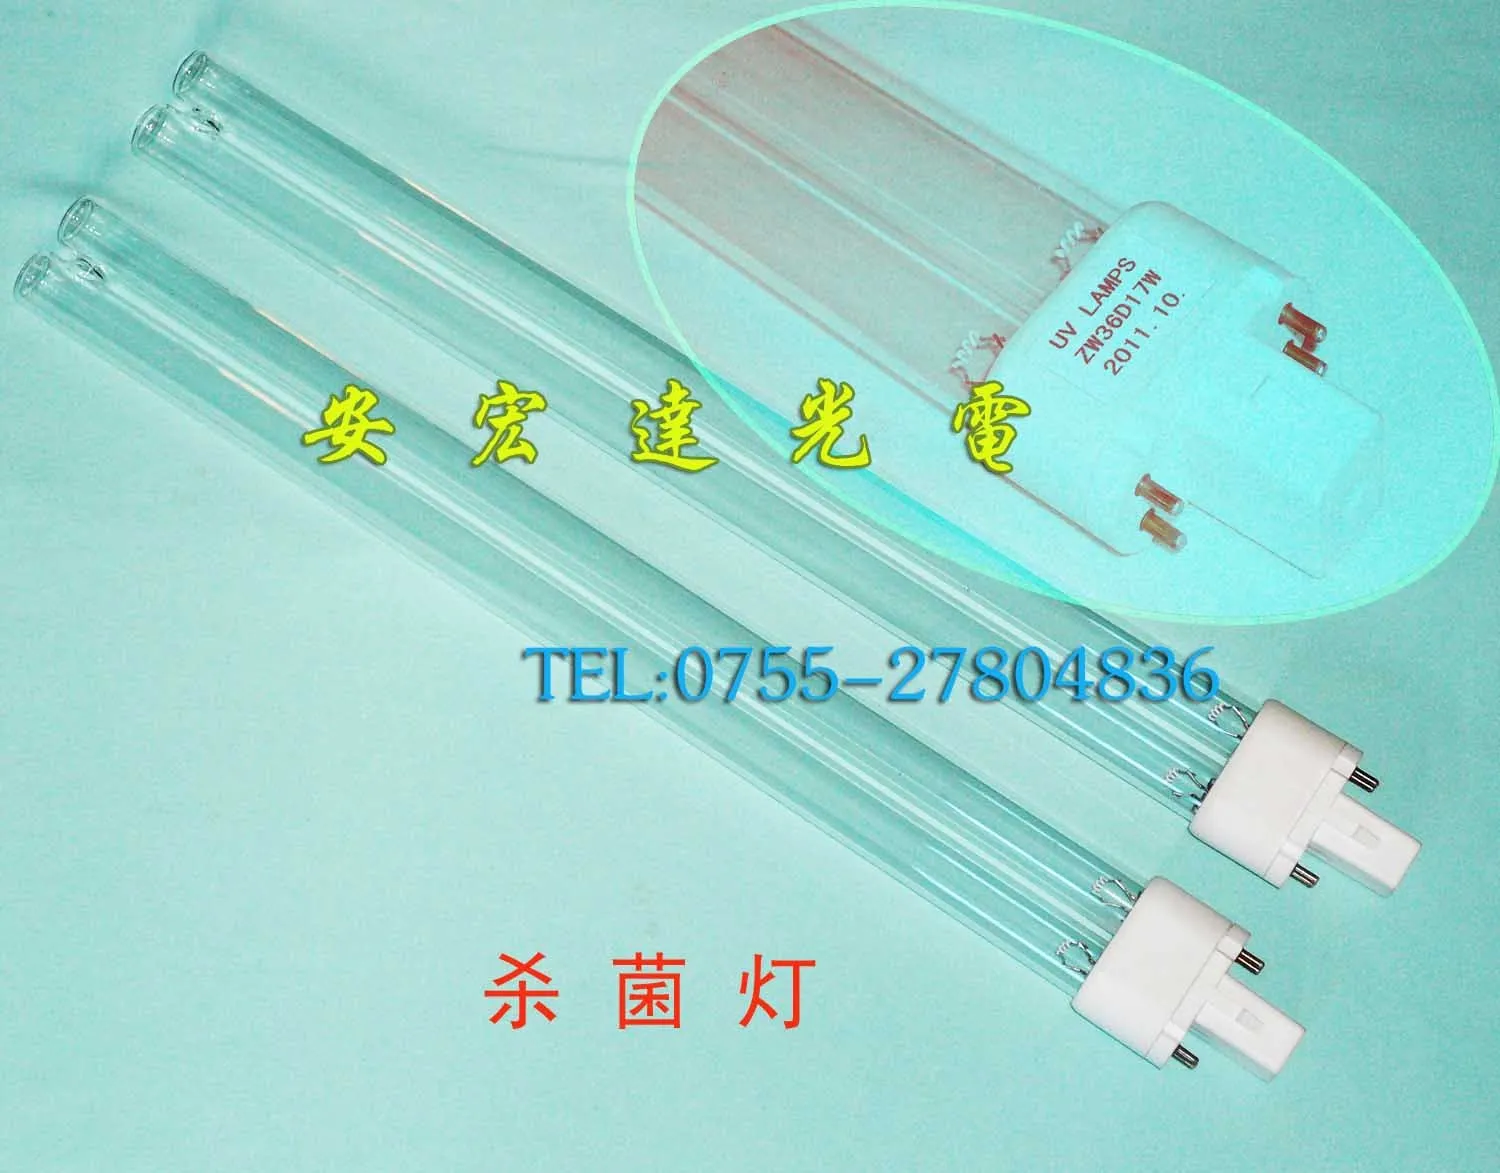 Дезинфекционная лампа Zw36wd17w 36 w 410 мм H бактерицидная лампа